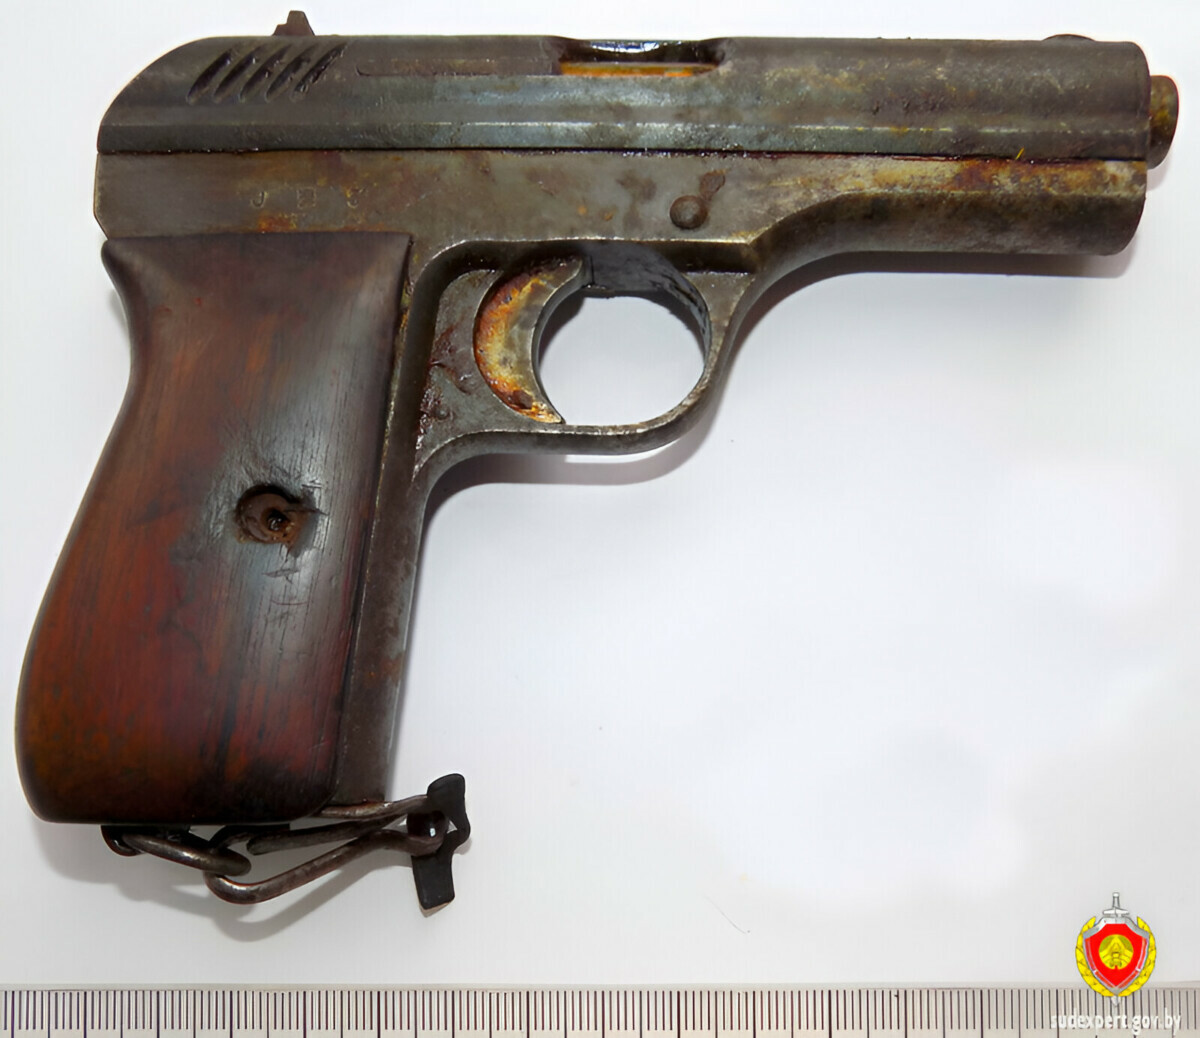 Житель Барановичей на чердаке нашел столетний пистолет. Что сказали эксперты?